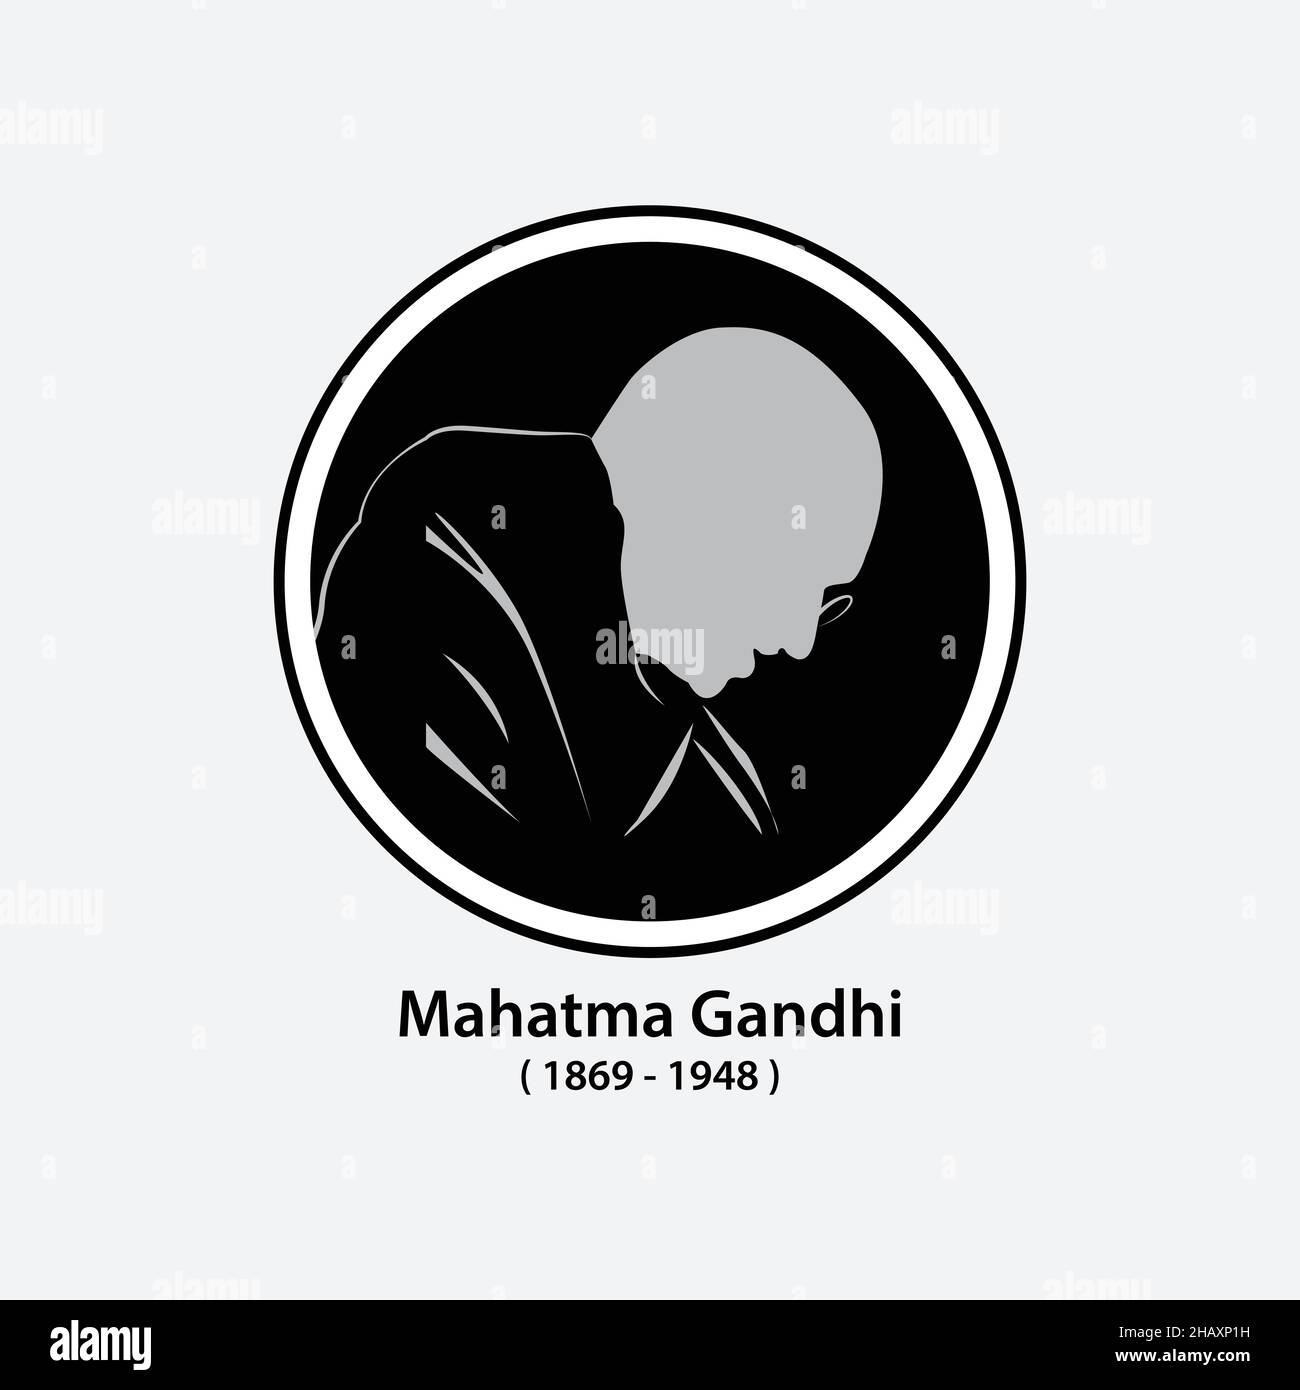 Gandhi, Indiens Vater der Nation. Mahatma Gandhi Vektorbild, Führer der indischen Unabhängigkeitsbewegung gegen die britische Herrschaft. Die beliebtesten Perso Stock Vektor